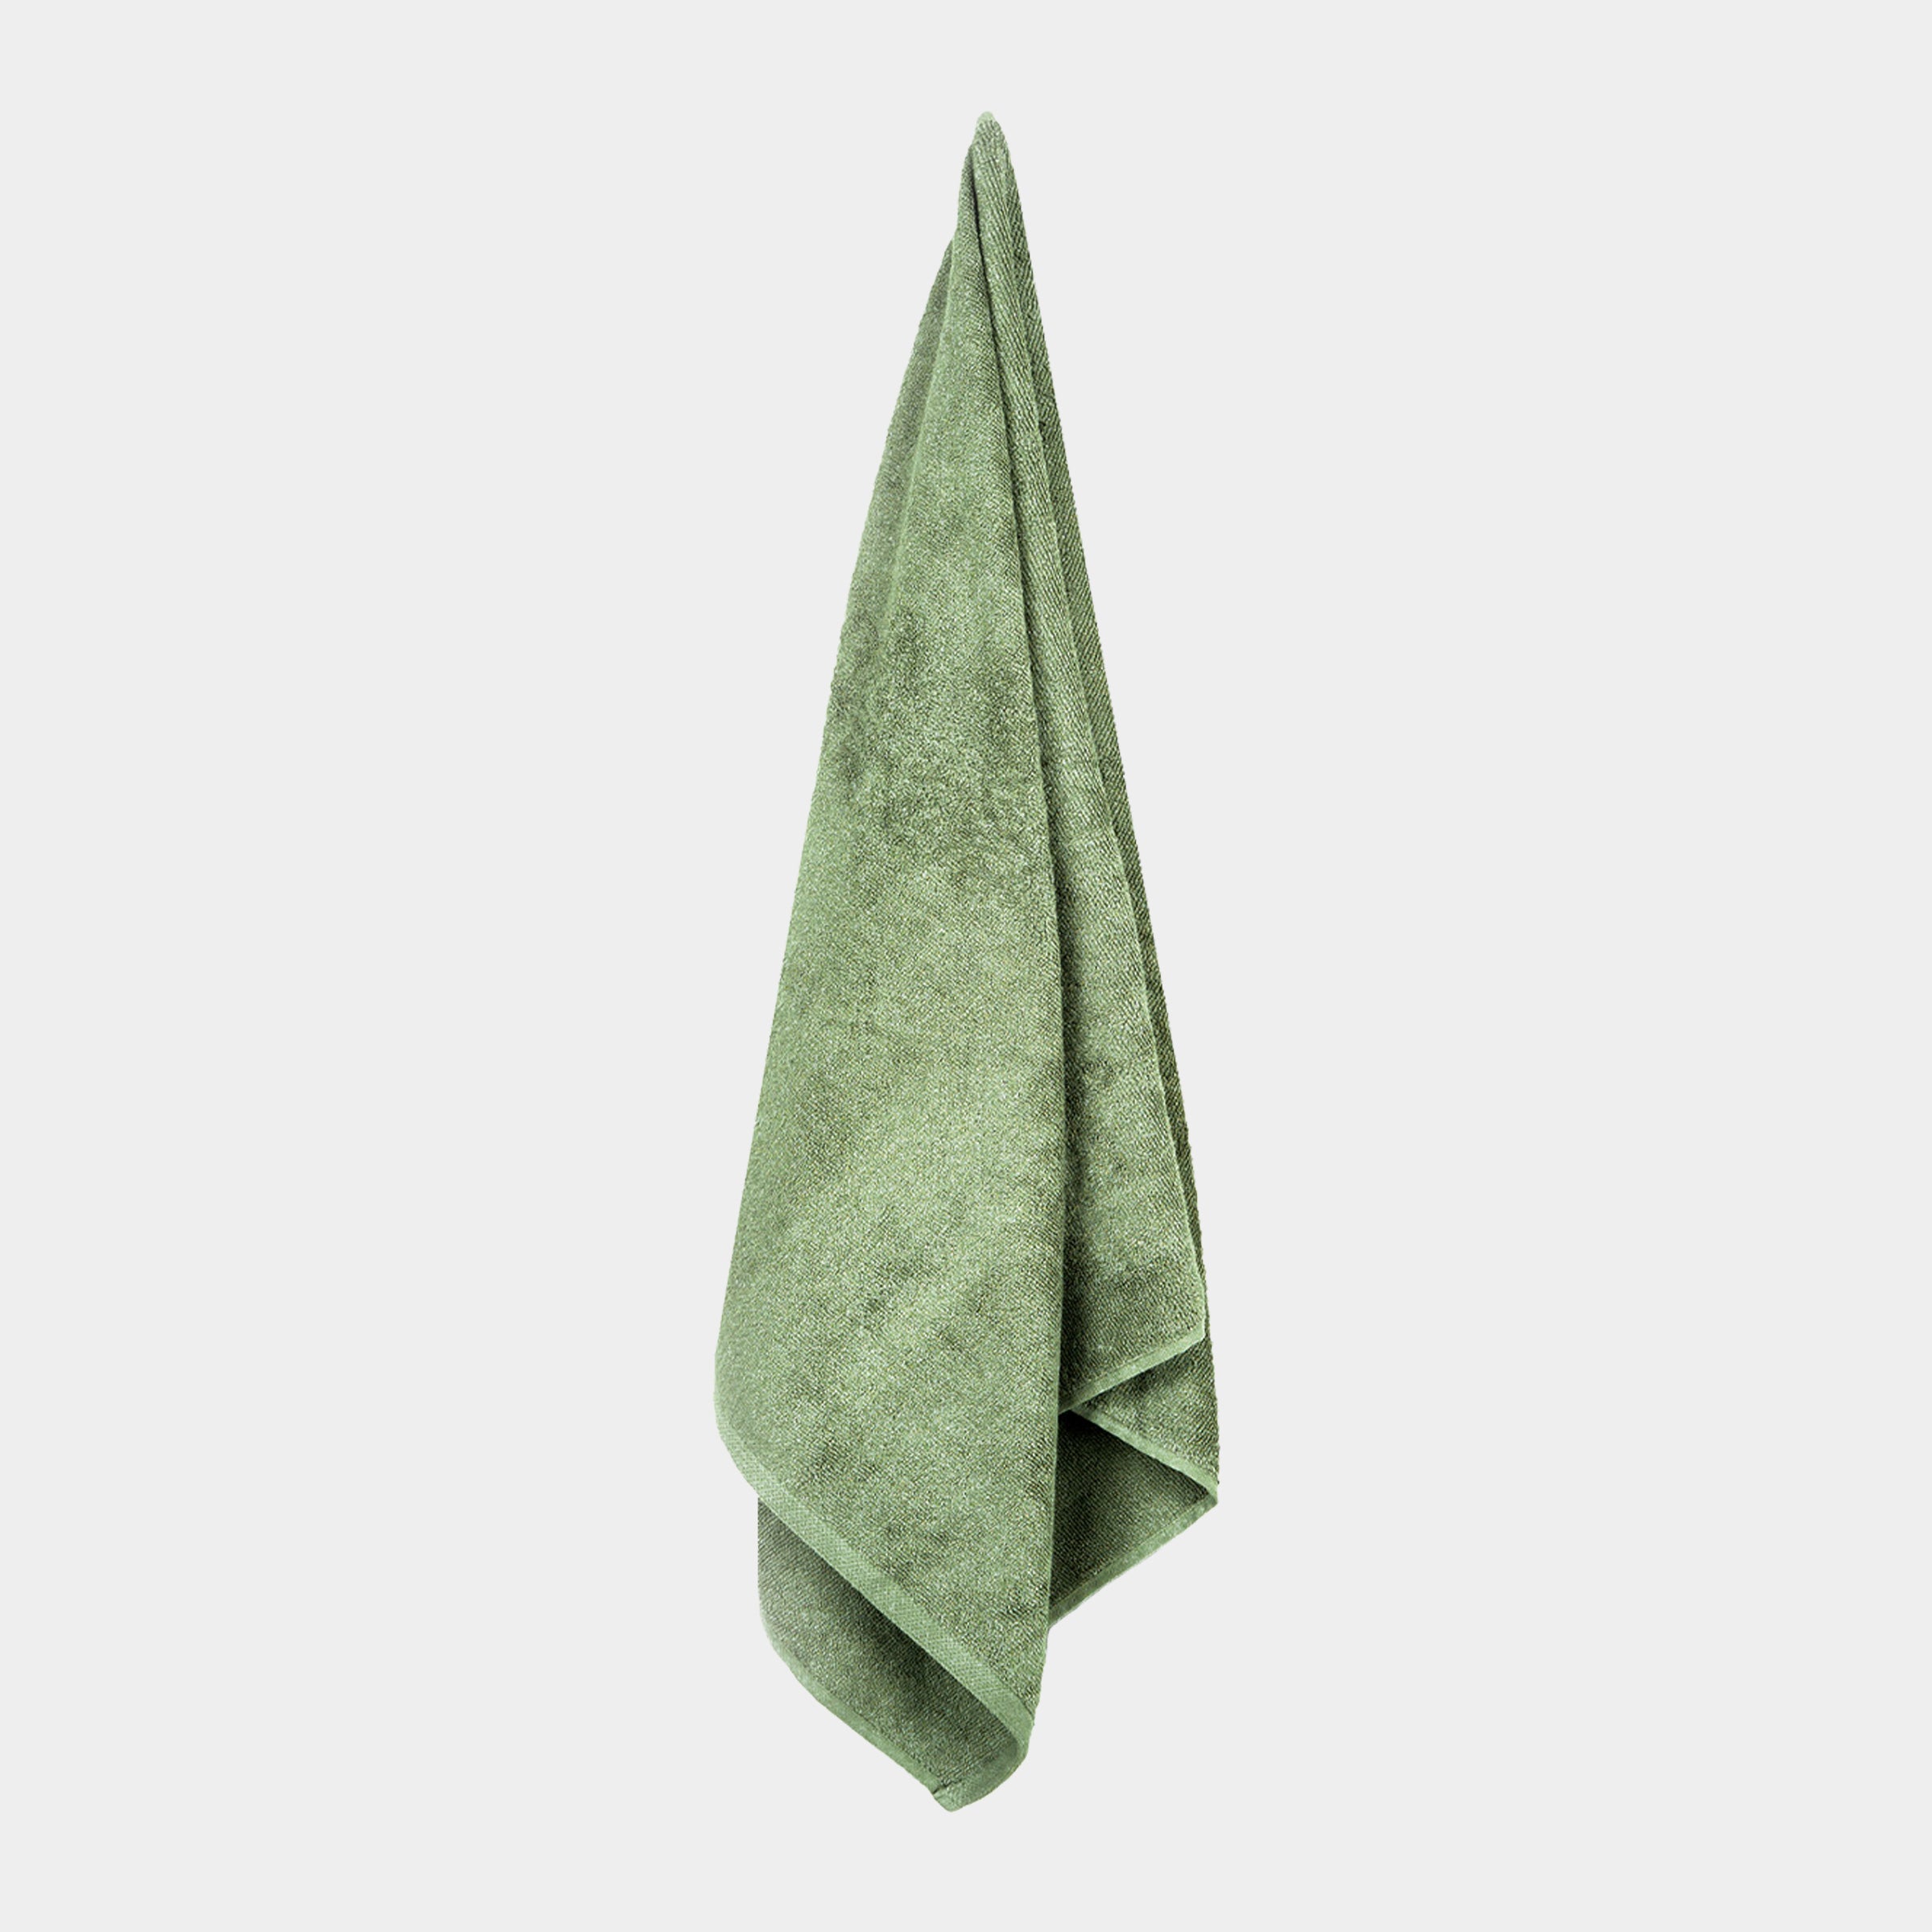 Se Bambus badehåndklæde 50x90 cm olivengrønt fra Nordic Weaving hos Bambustøj.dk